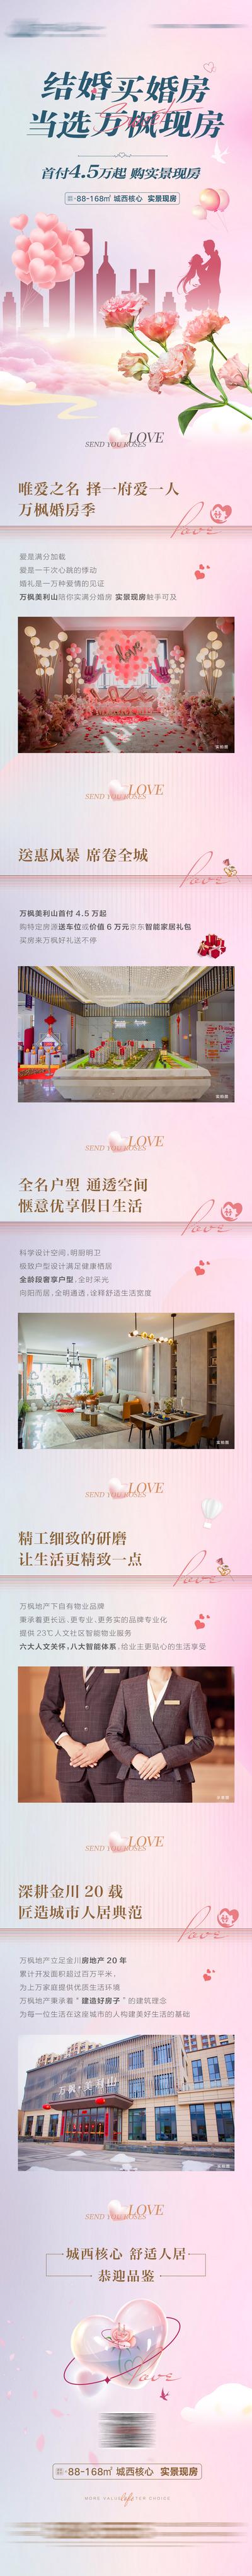 南门网 广告 海报 地产 婚房 特价房 长图 推文 520 礼物 情人节